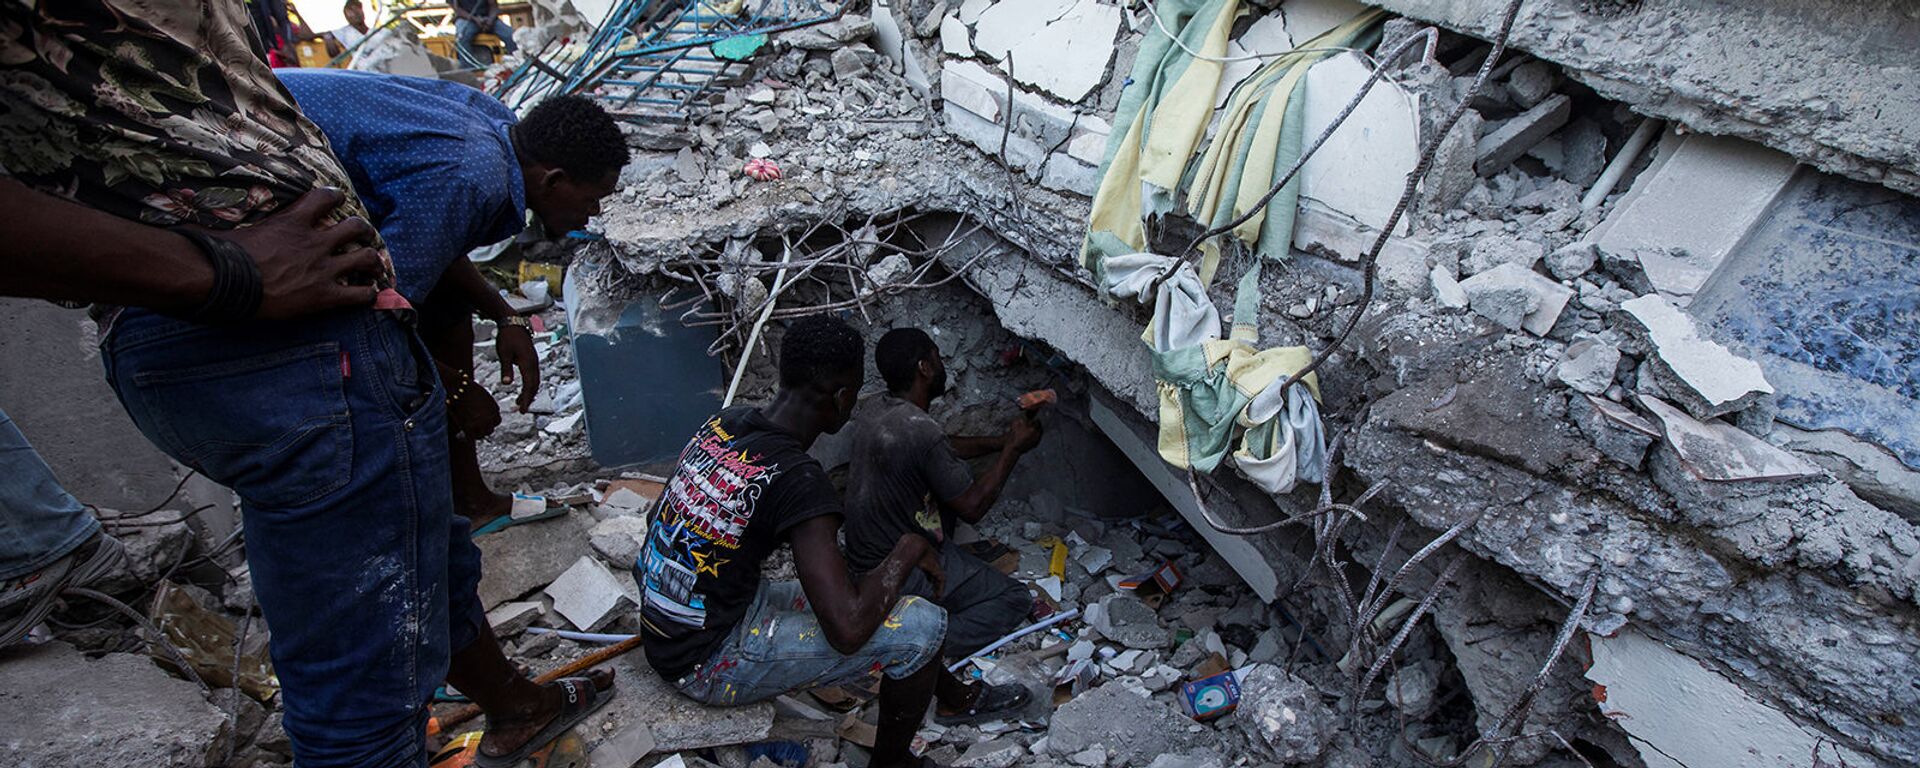 Люди ищут выживших в доме, разрушенном в результате землетрясения силой 7,2 балла в Ле-Ке (15 августа 2021). Гаити - Sputnik Армения, 1920, 18.08.2021